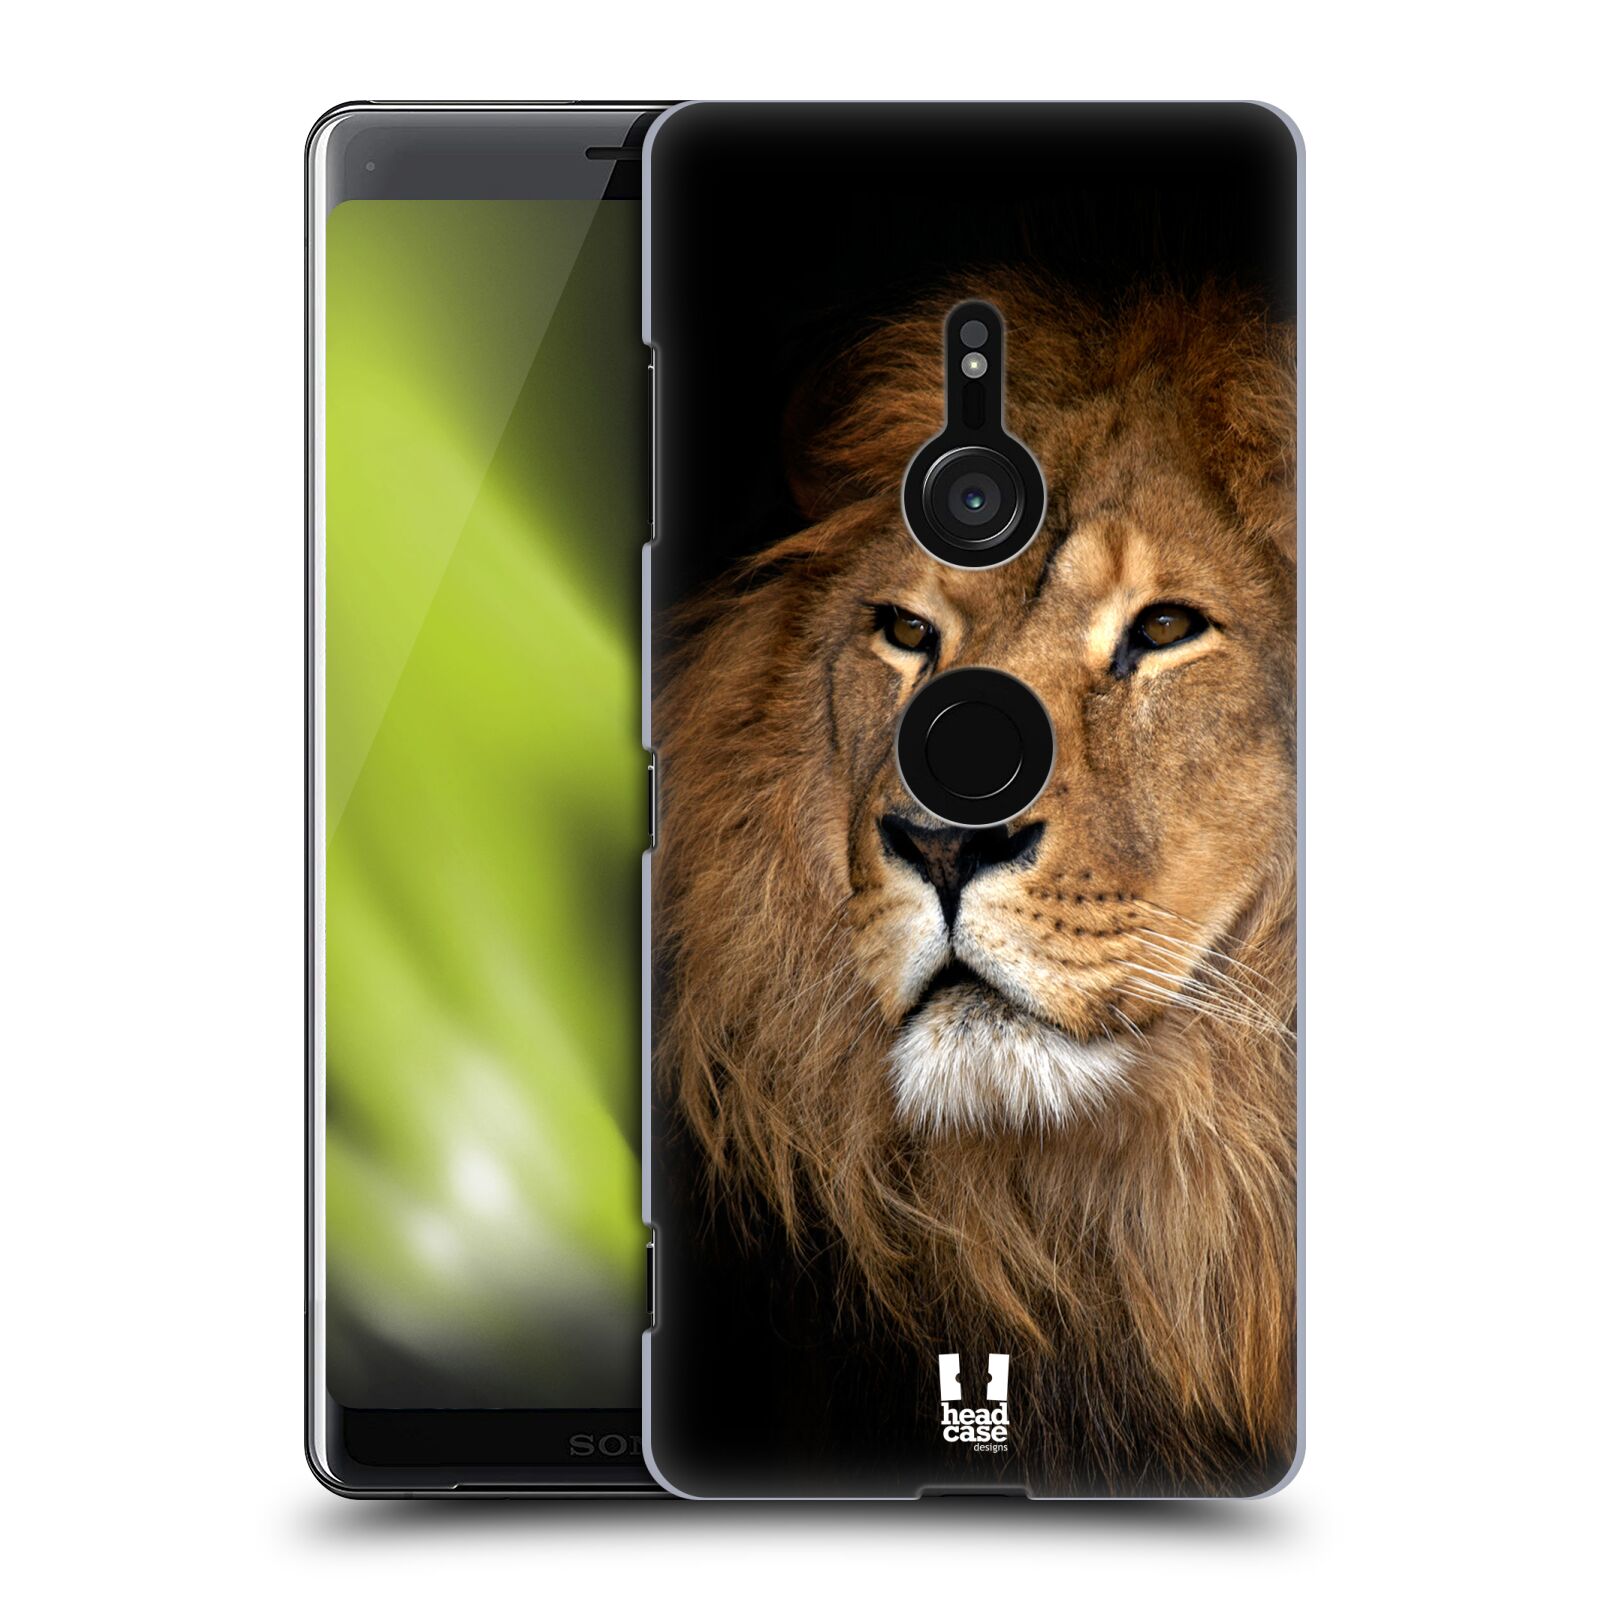 Zadní obal pro mobil Sony Xperia XZ3 - HEAD CASE - Svět zvířat král zvířat Lev